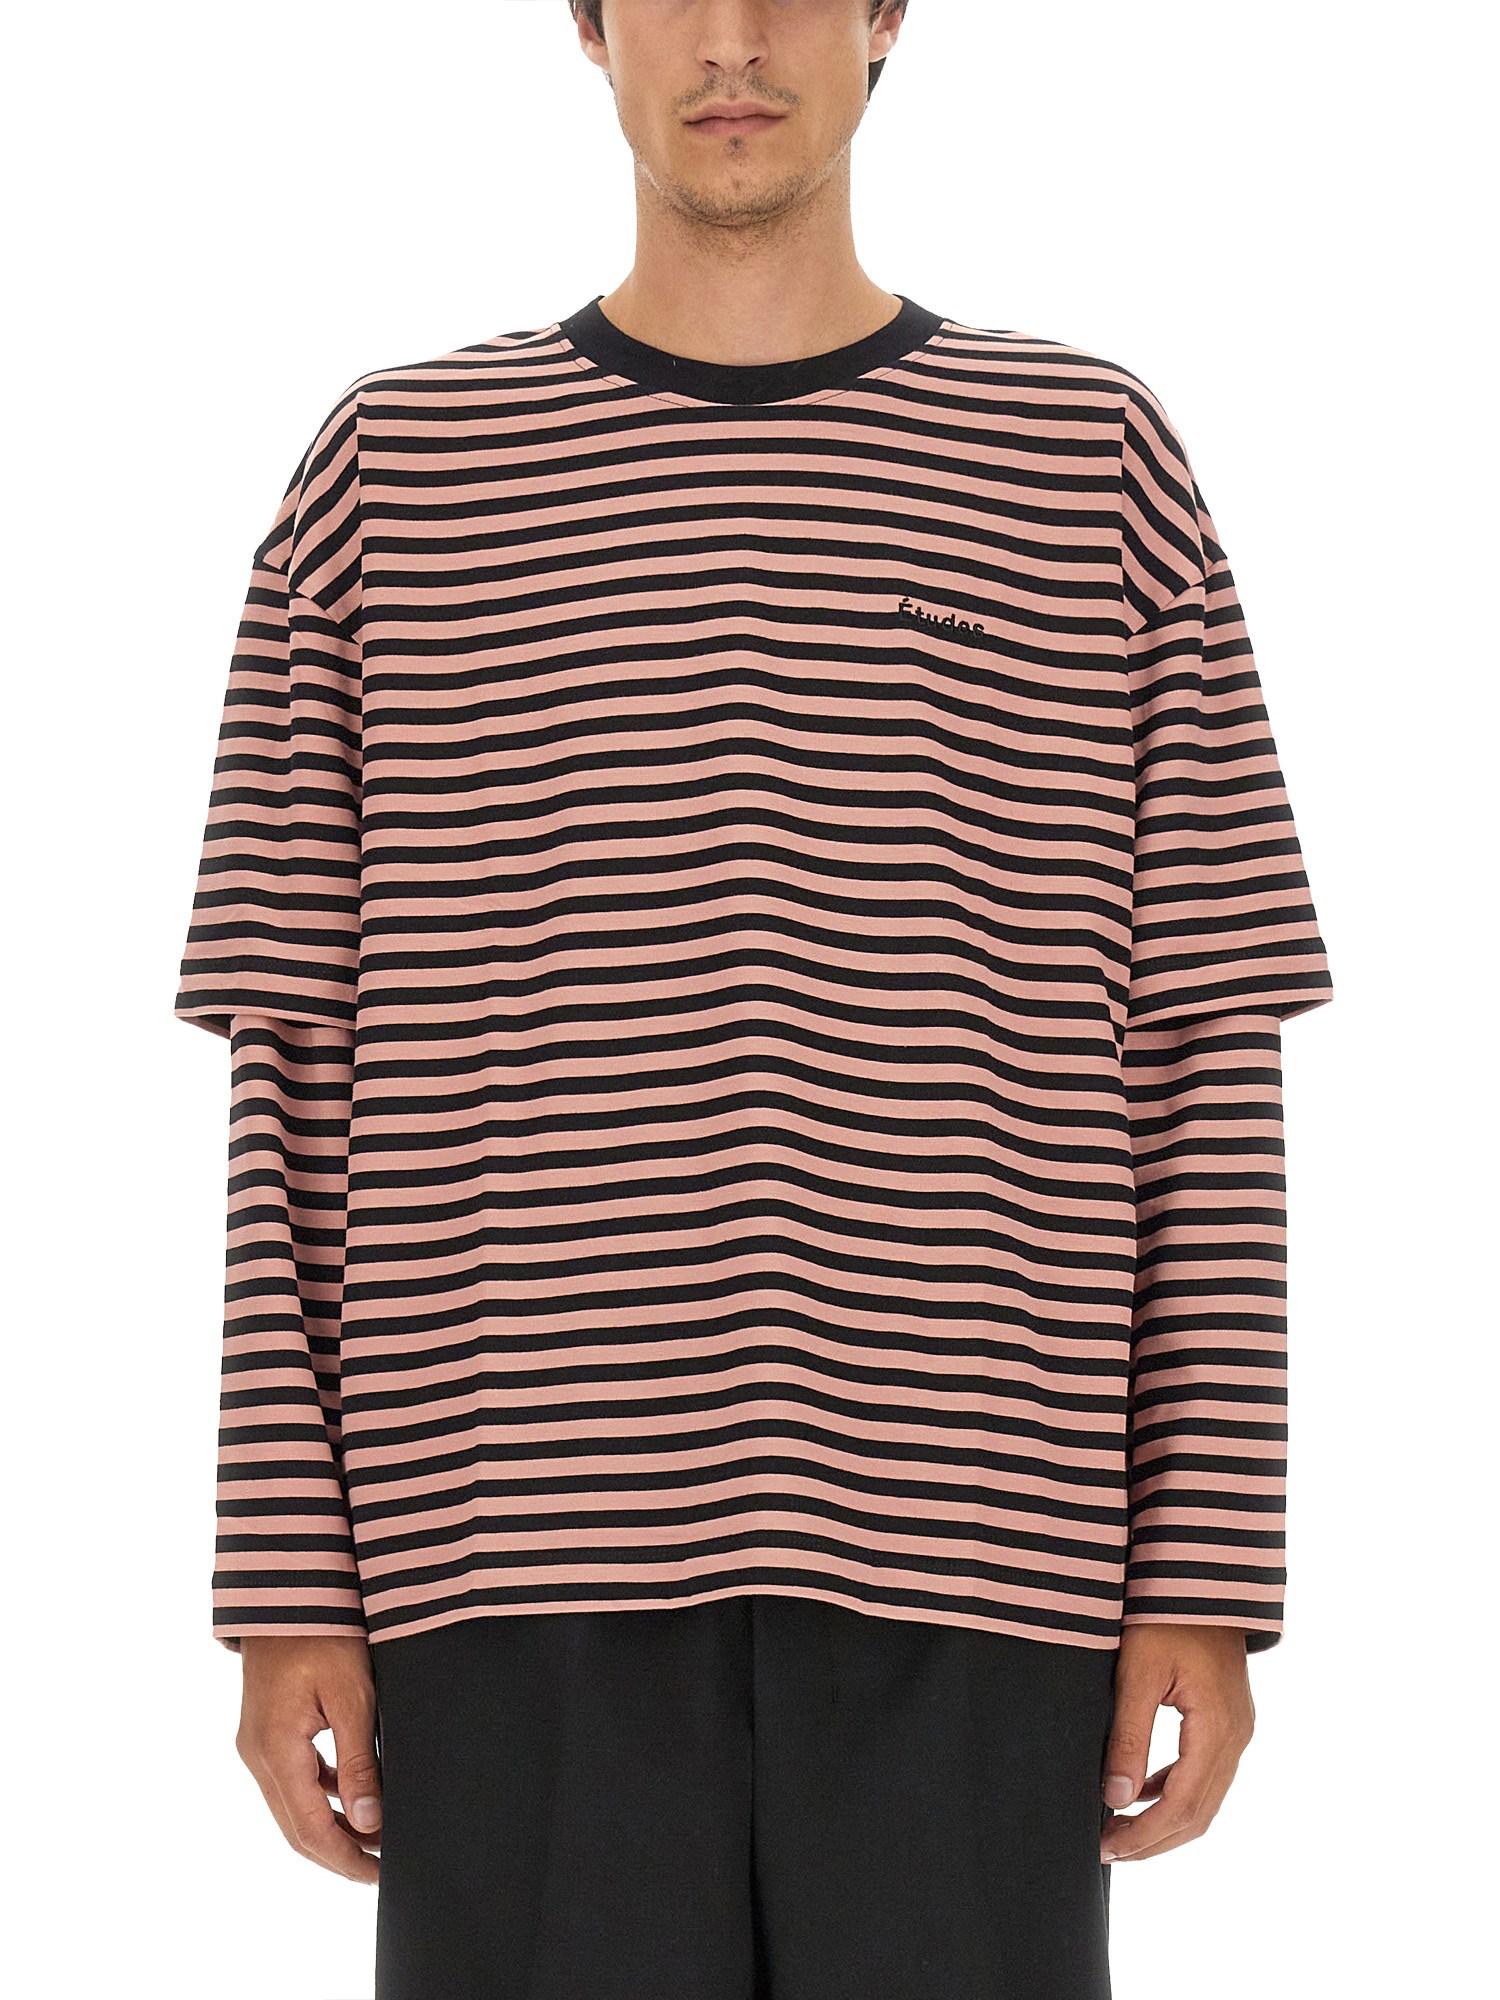 Études études t-shirt with stripe pattern